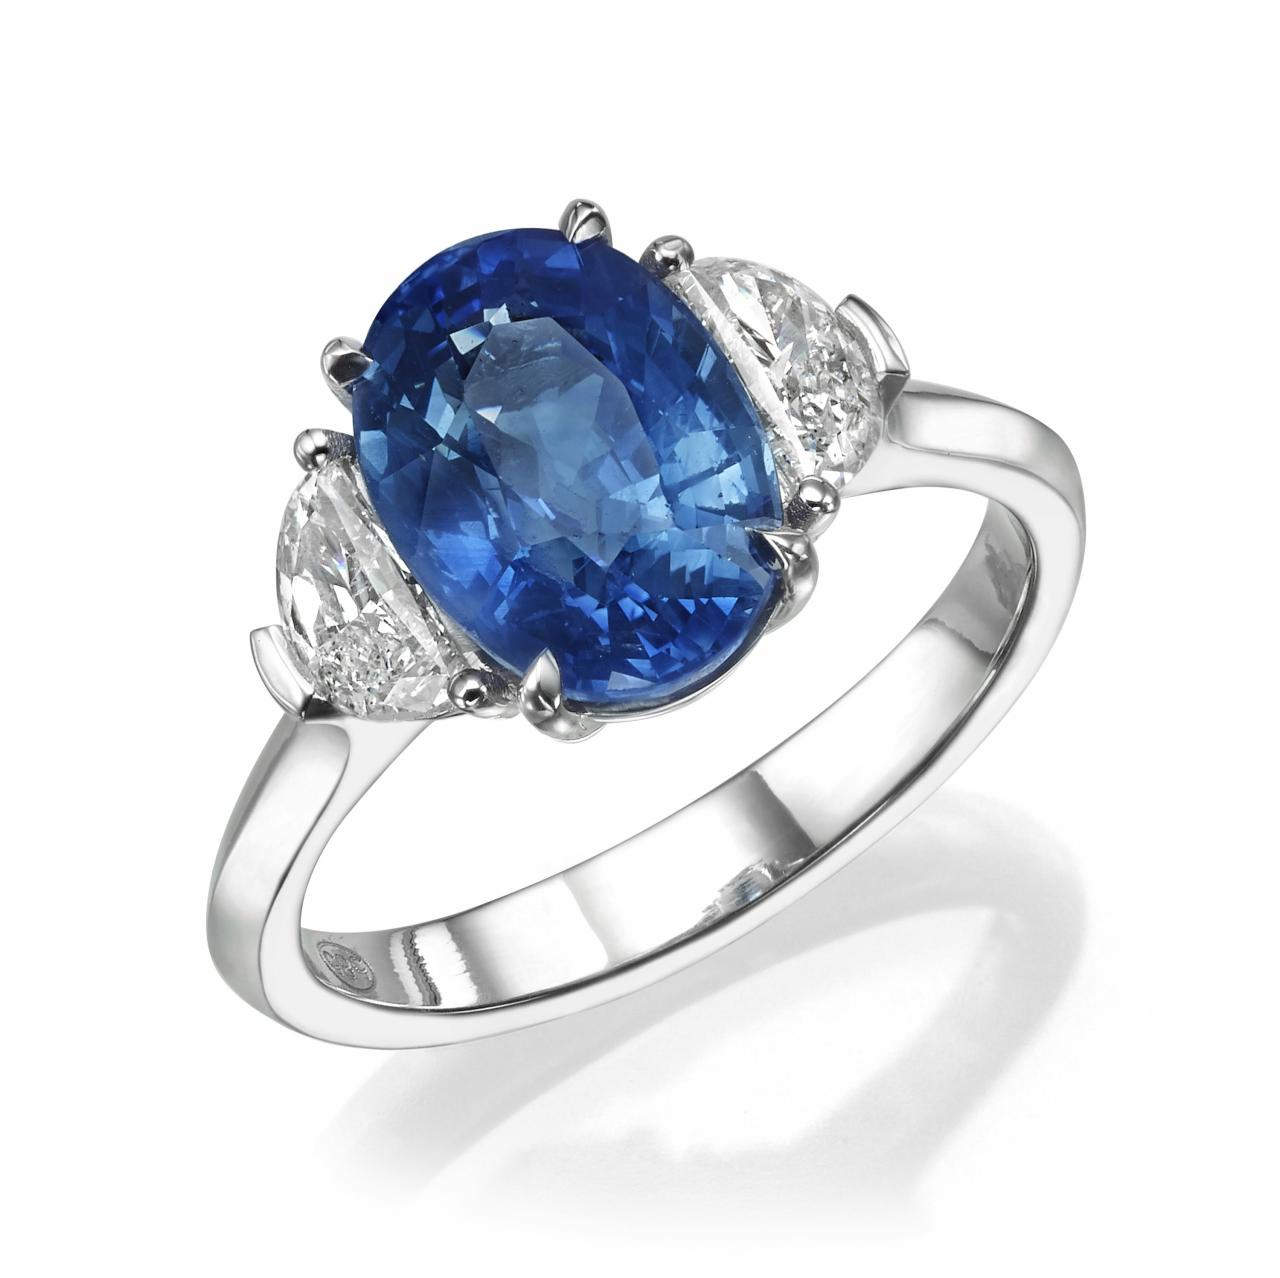 טבעת כסף אלגנטית הכוללת חיתוך אובלי ספיר כחול בולט.